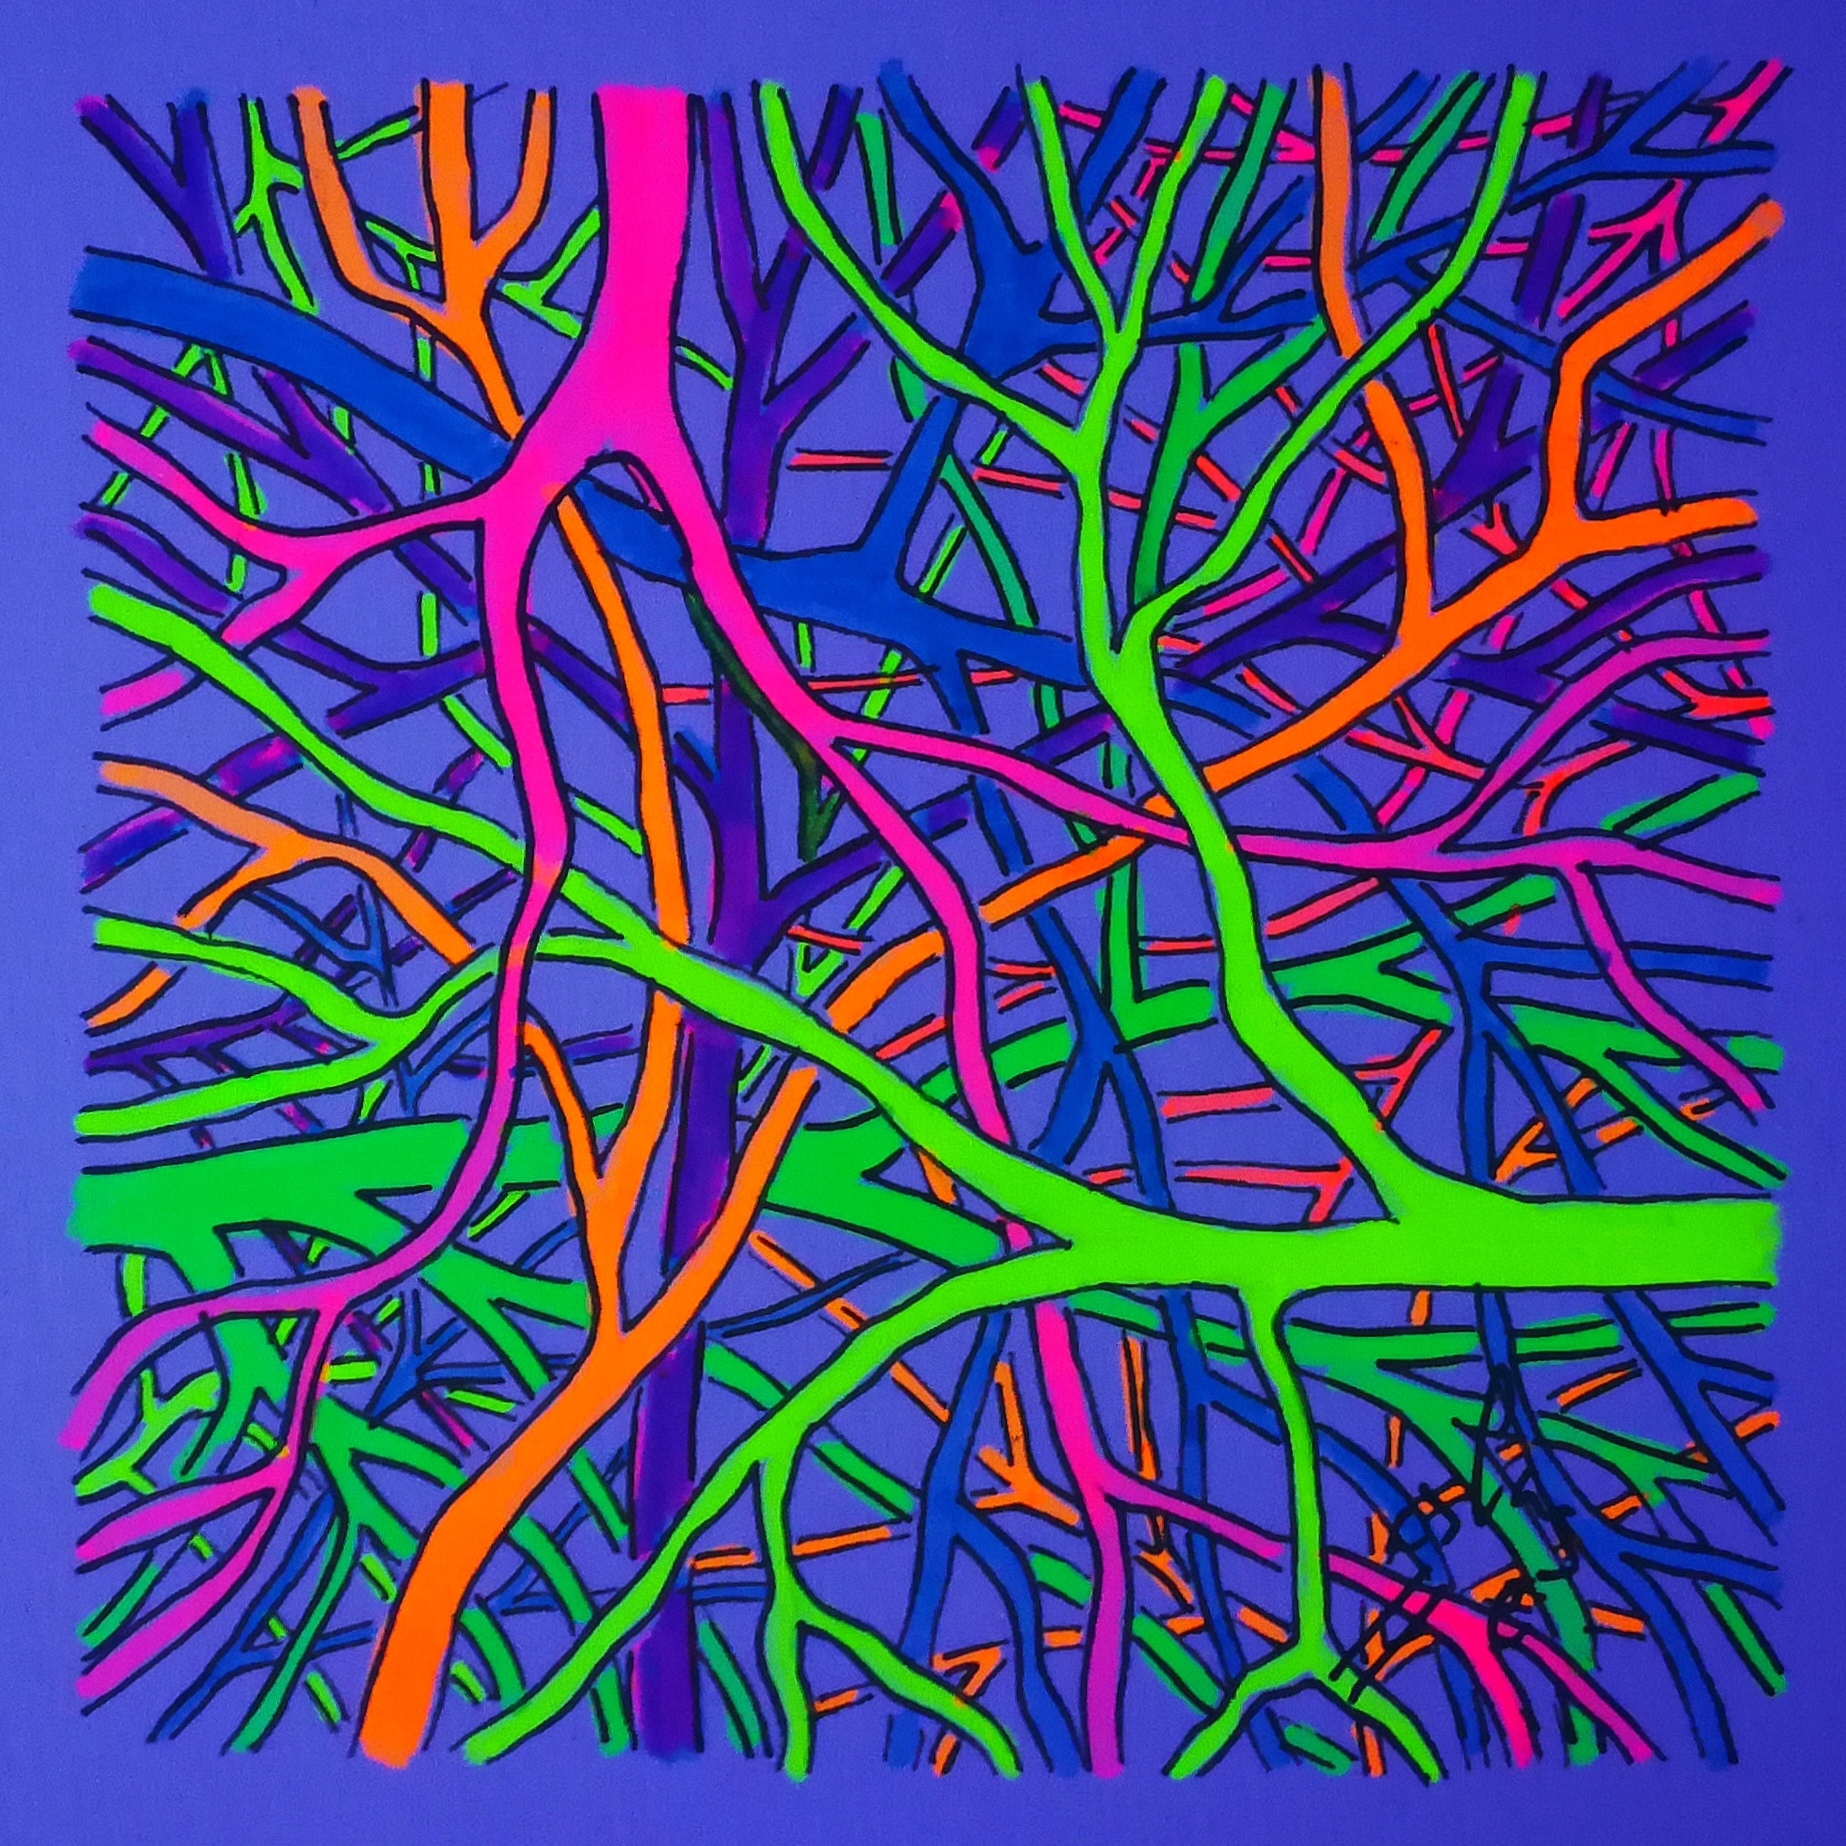 Ramas venas raíces (fluo), Vicky Casellas, Ilustración fluorescente